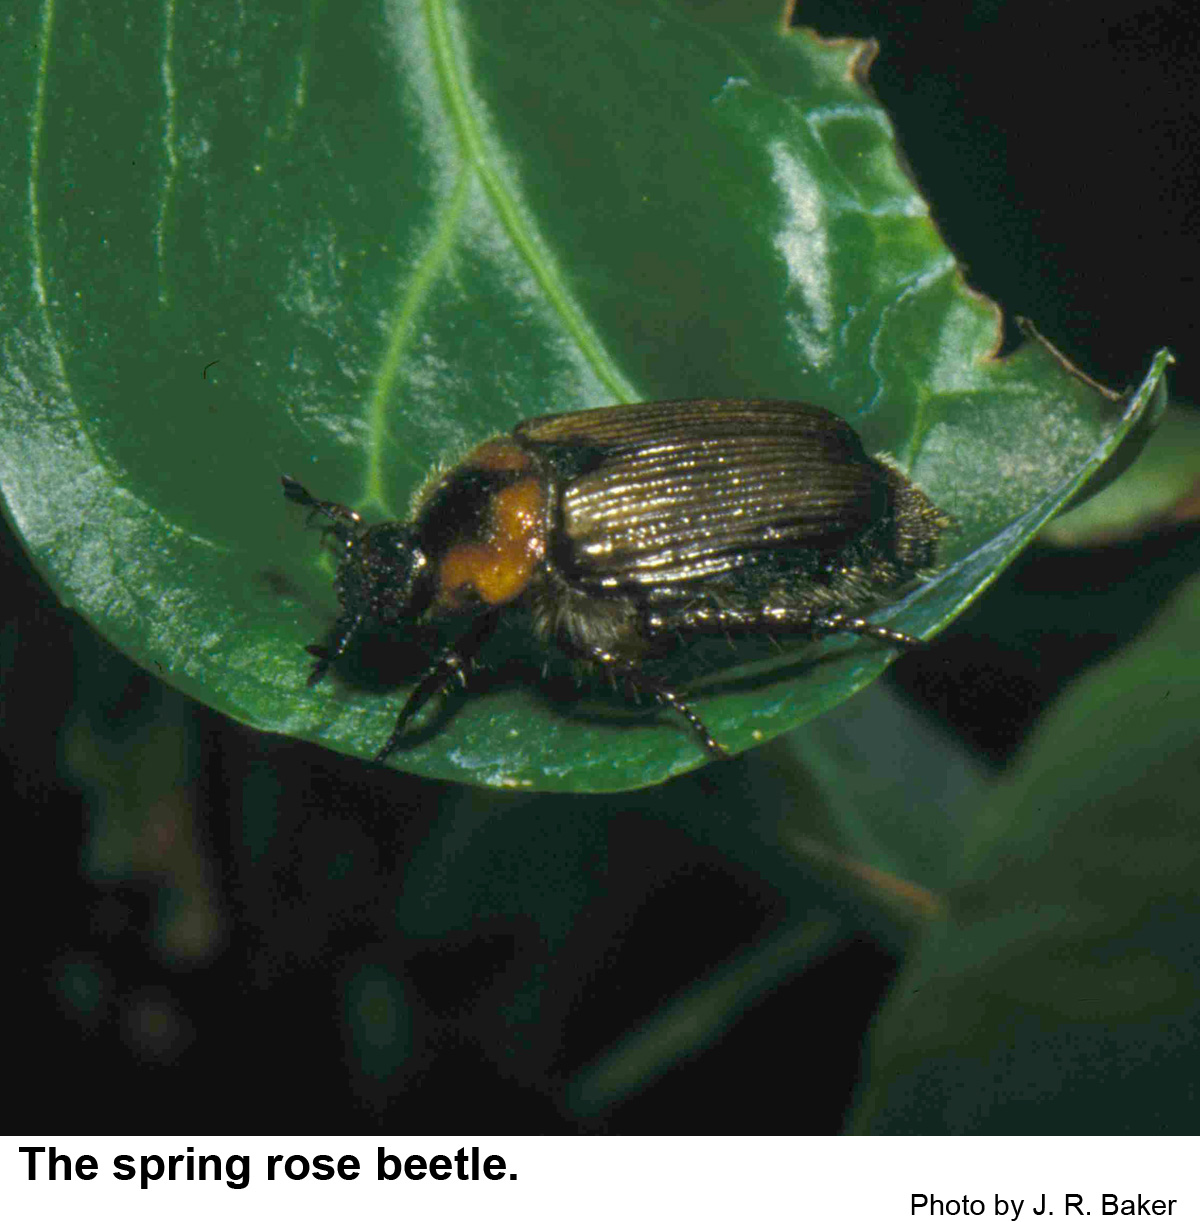 Spring rose beetle on a leaf